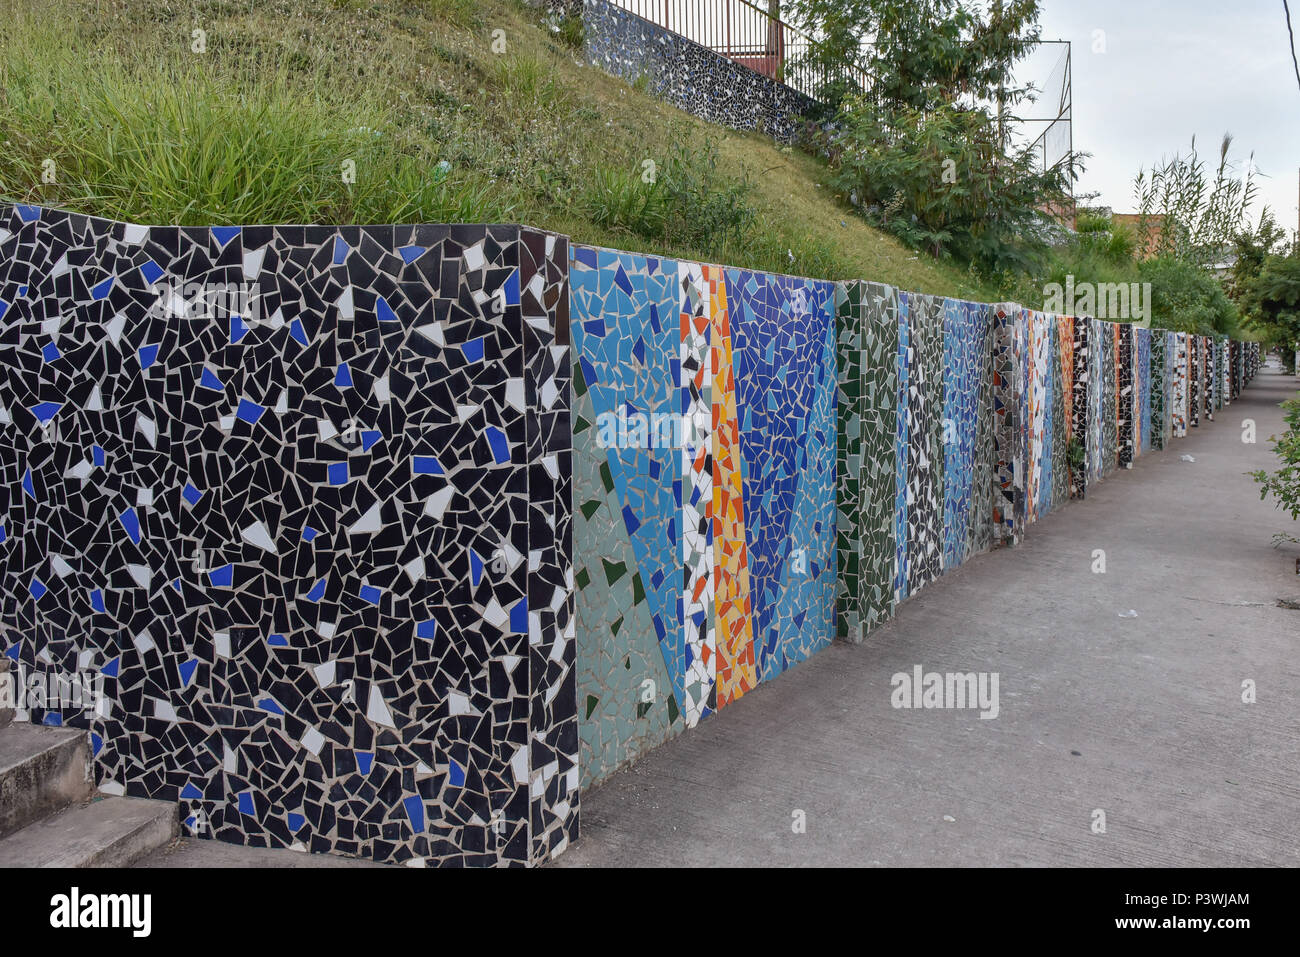 BELO Horizonte, MG - 26.04.2016: MURO DE LADRILHOS - Muro de mosaico de ladrilhos em uma praça pública, na esquina de rua Gentios com a avenida Raja Gabaglia, em Belo Horizonte (MG). (Foto: Mourão Panda / Fotoarena) Foto Stock